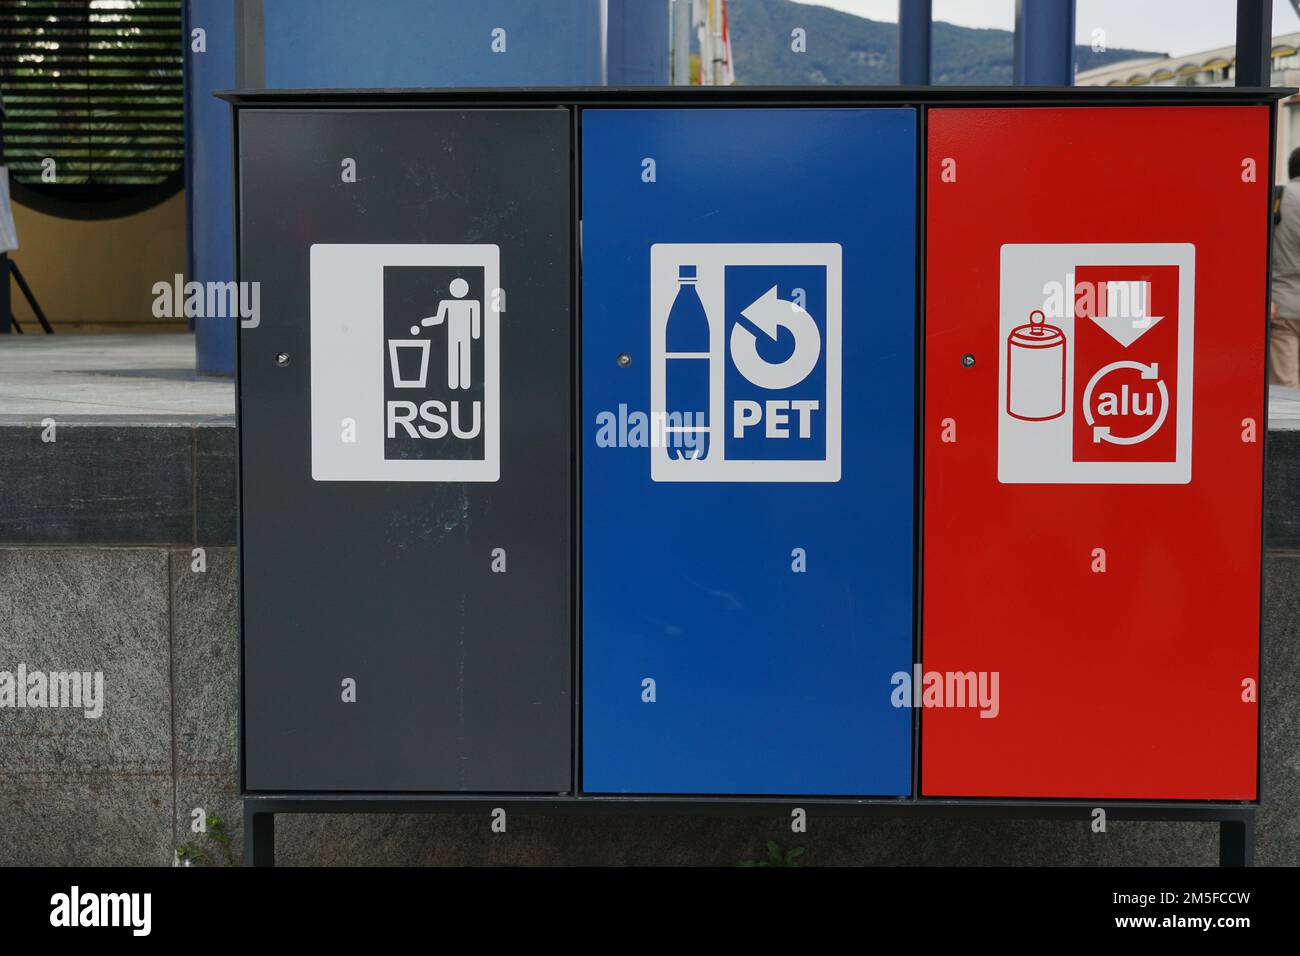 Drei Abfalltrennbehälter in Schwarz, Blau und Rot für festen Siedlungsabfall, Kunststoff und Aluminium mit Beschriftung in italienischer Sprache. Stockfoto